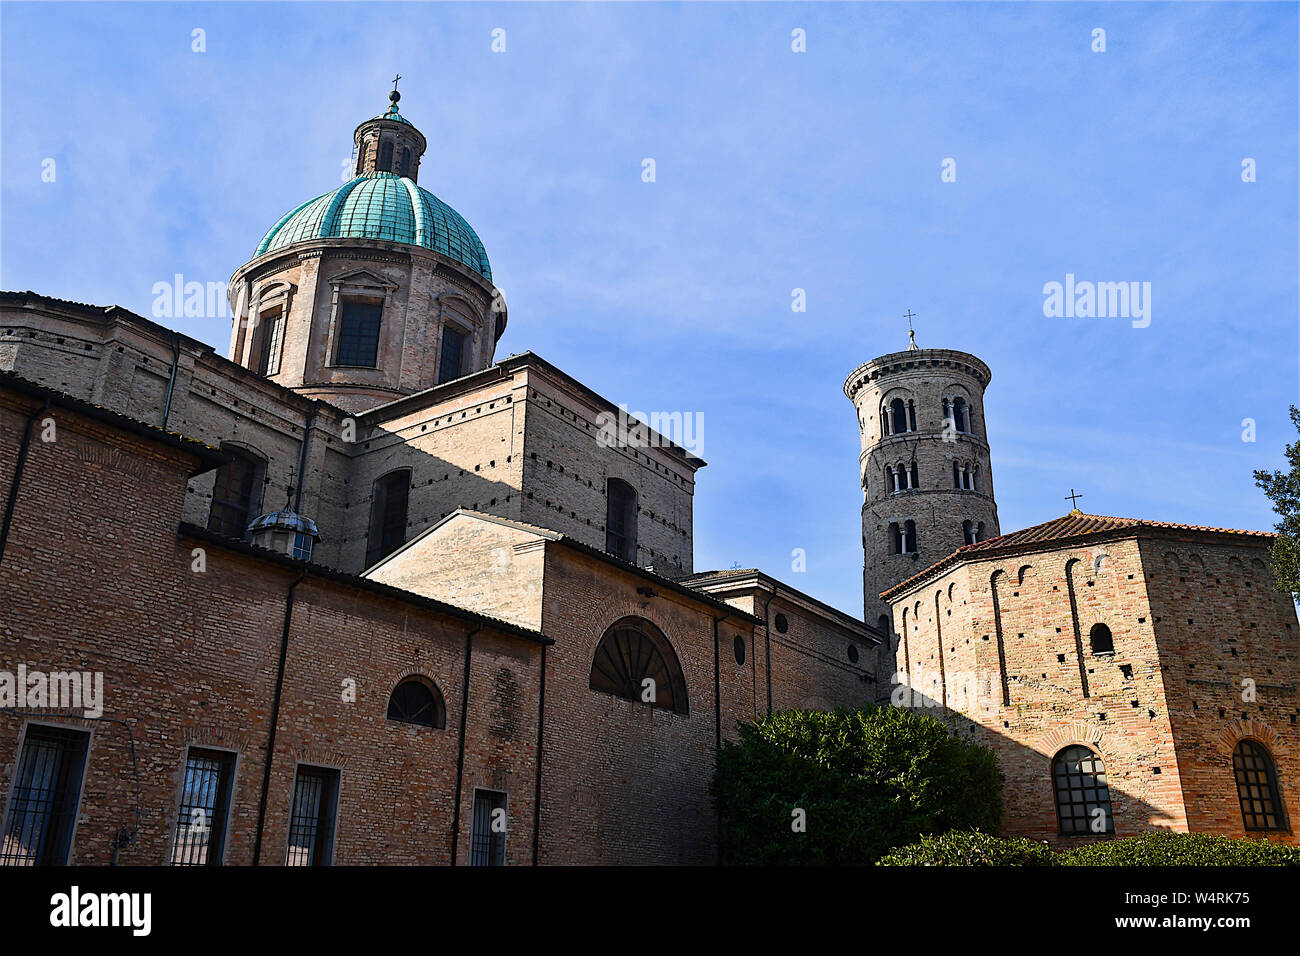 Mittelalterliche Burg Türme und Kuppel, Battistero Neoniano, Ravenna, Emilia-Romagna, Italien Stockfoto